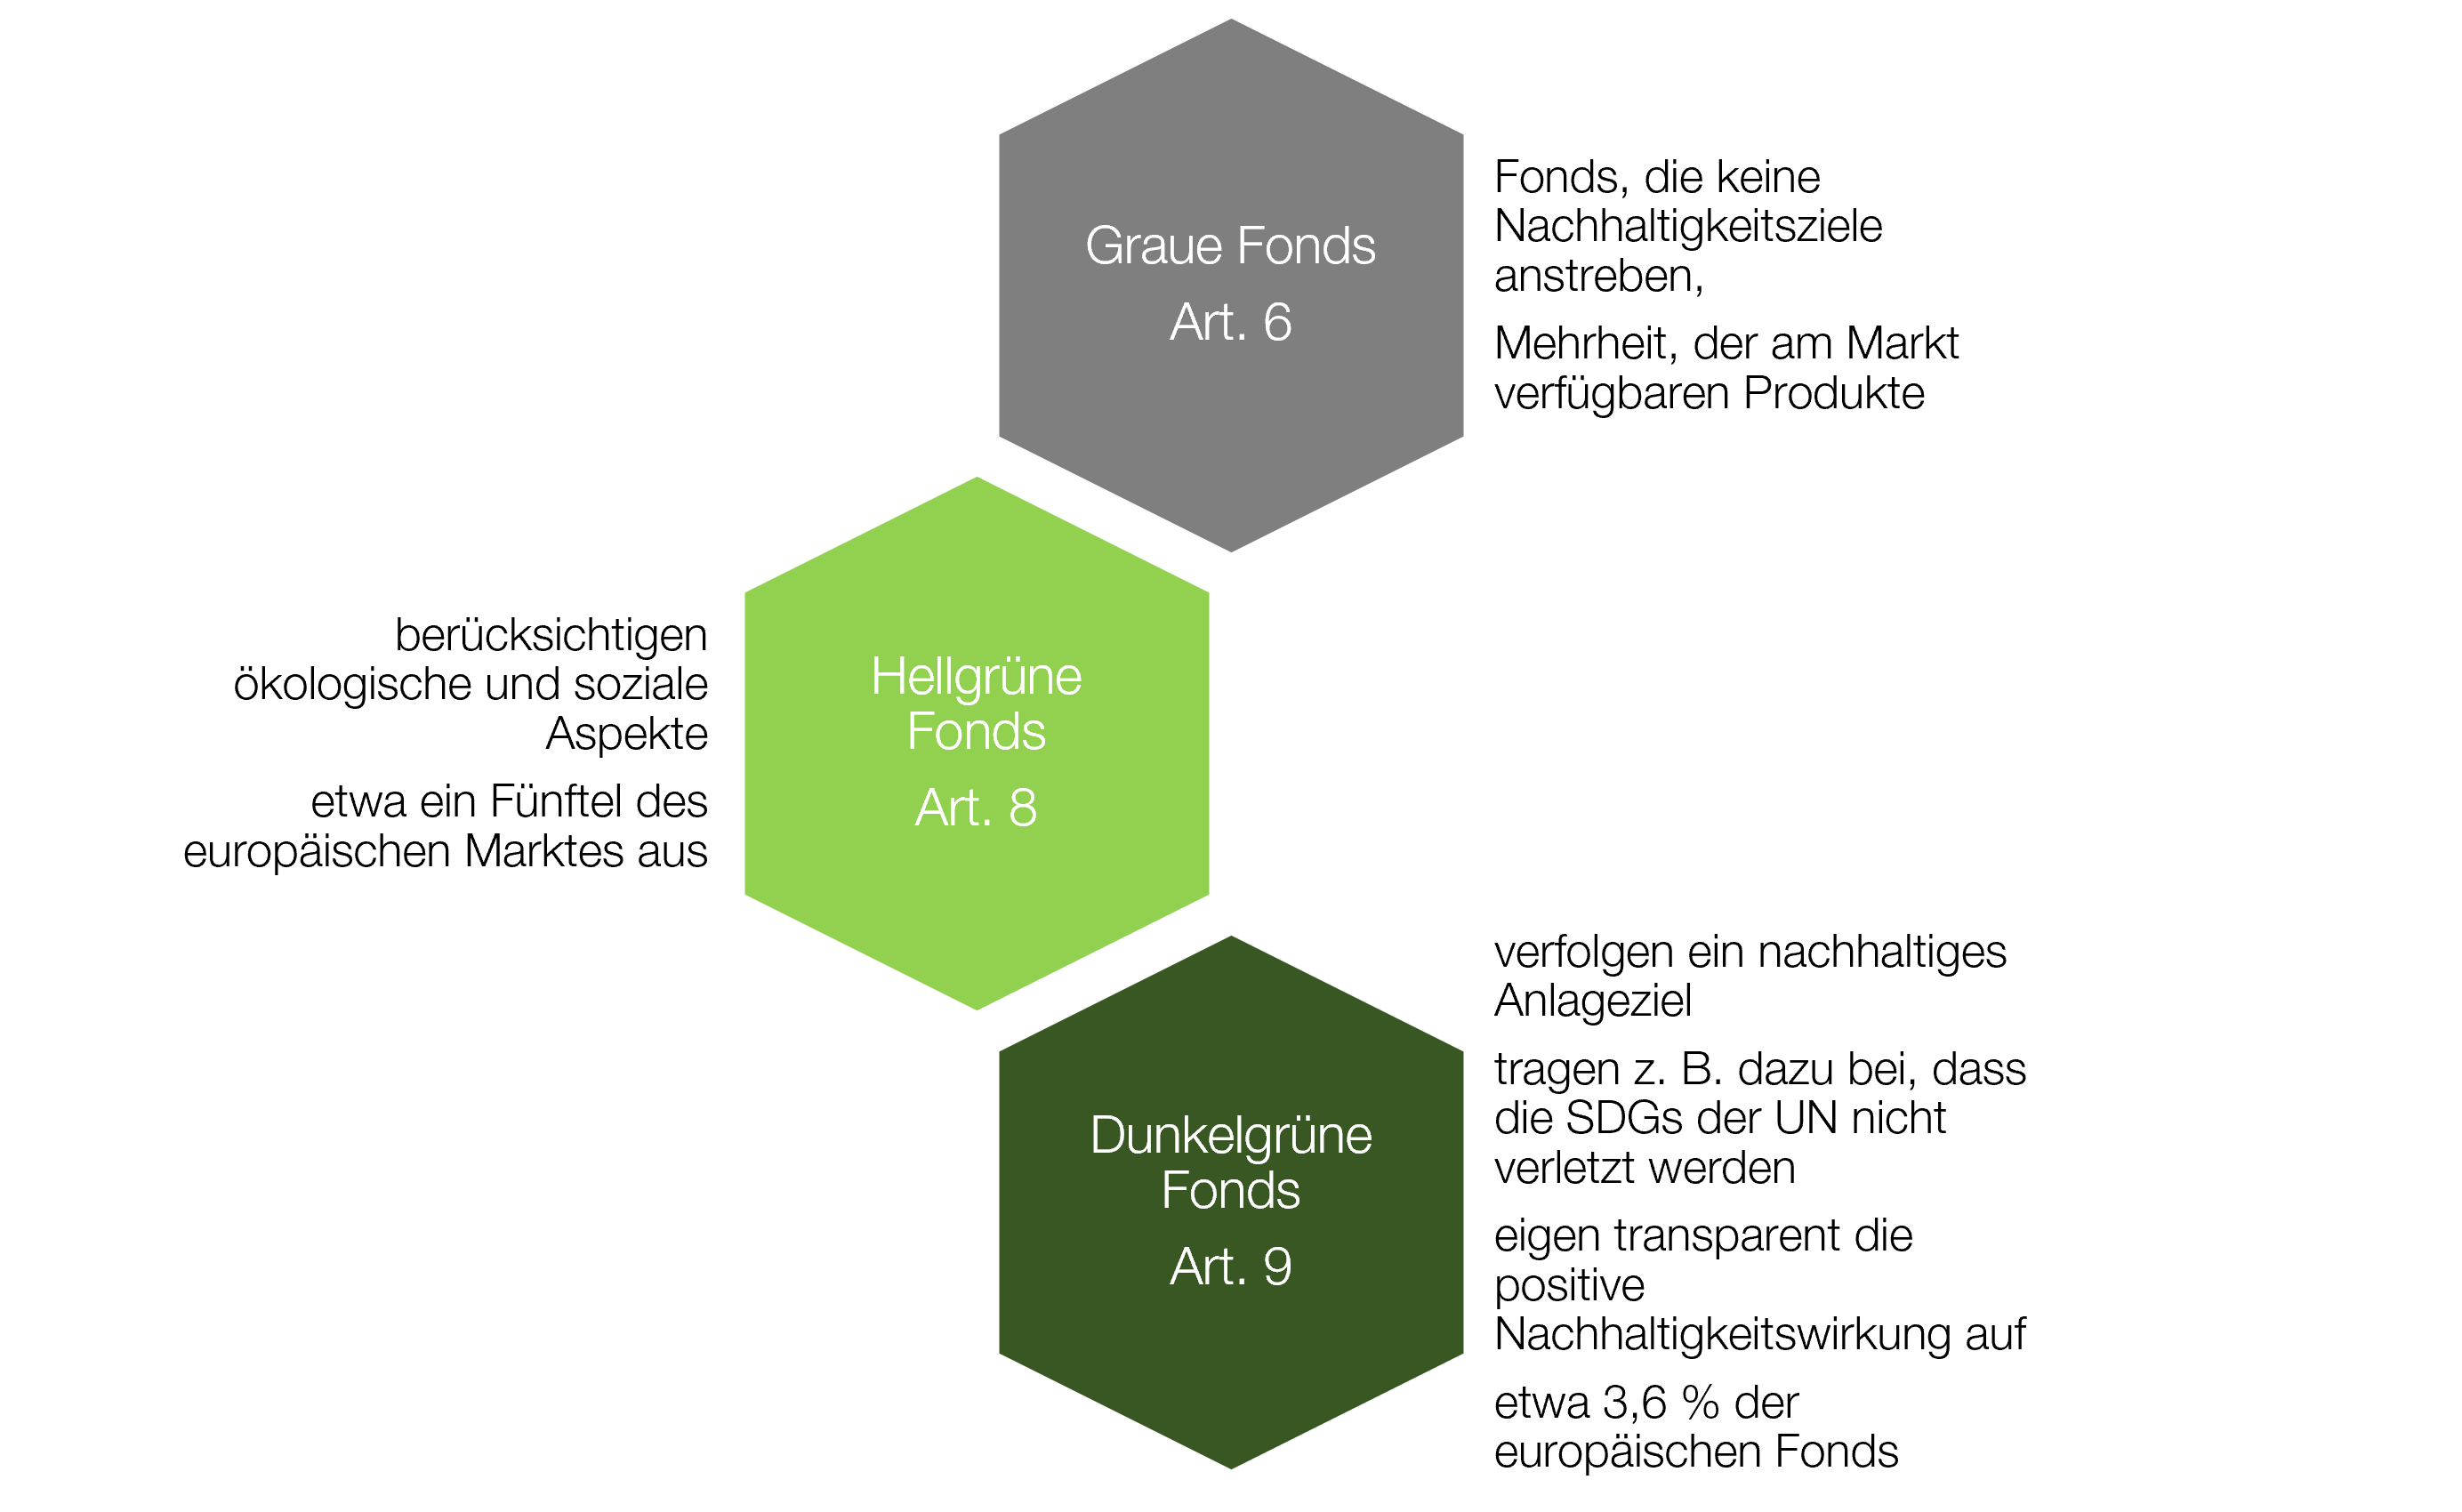 Nachhaltige Finanzen und Versicherungen - Einteilung der Fonds nach der EU-Verordnung